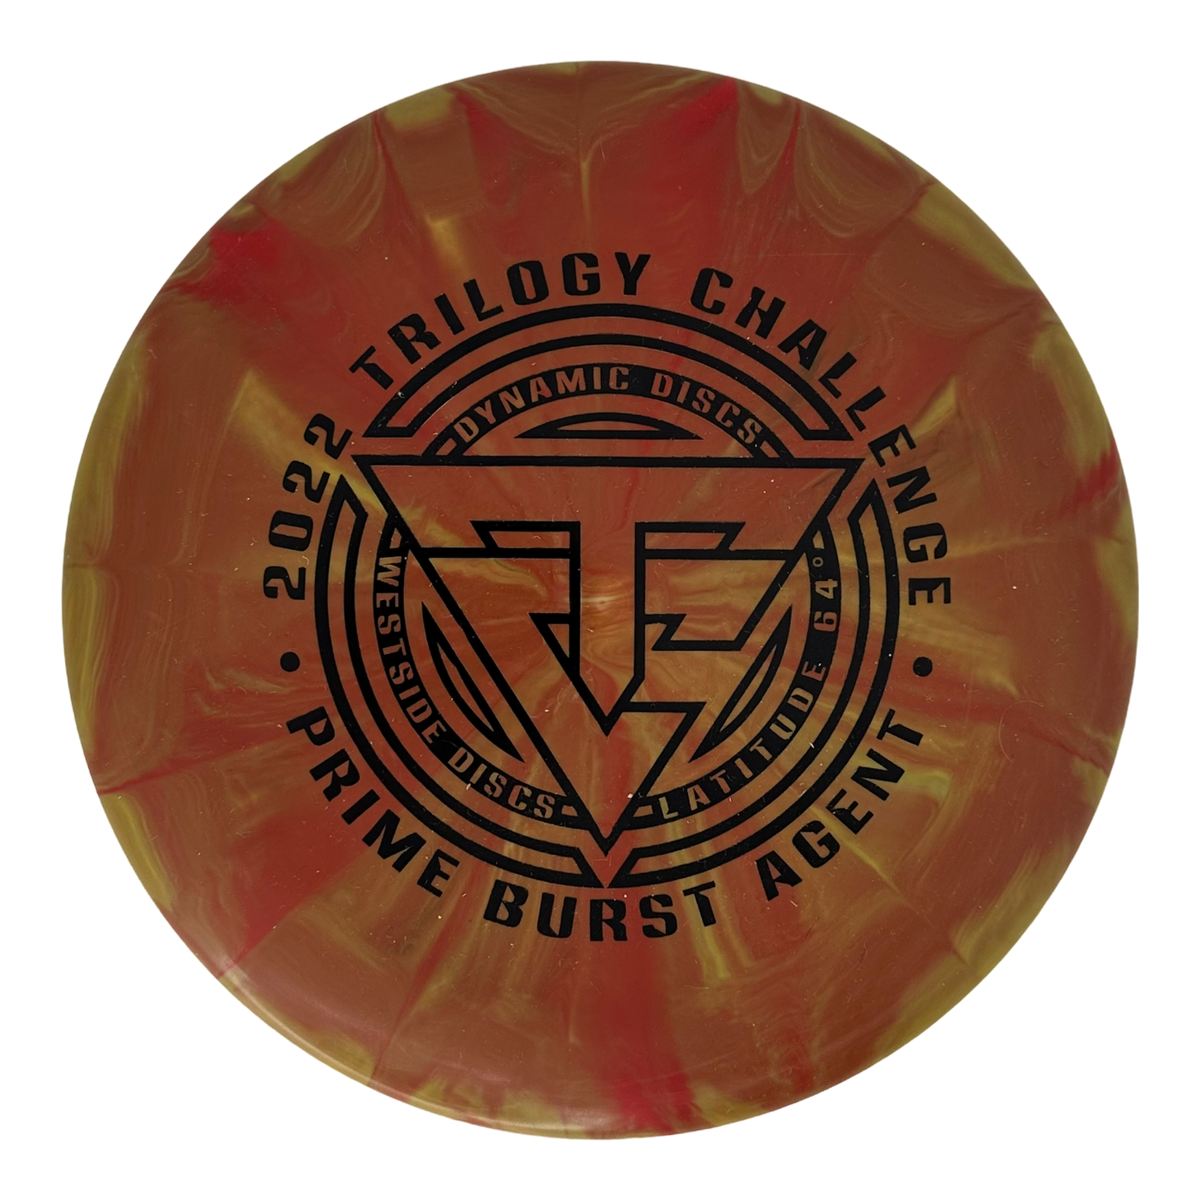 Dynamic Discs Prime Burst Agent - Trilogy Challenge 2022